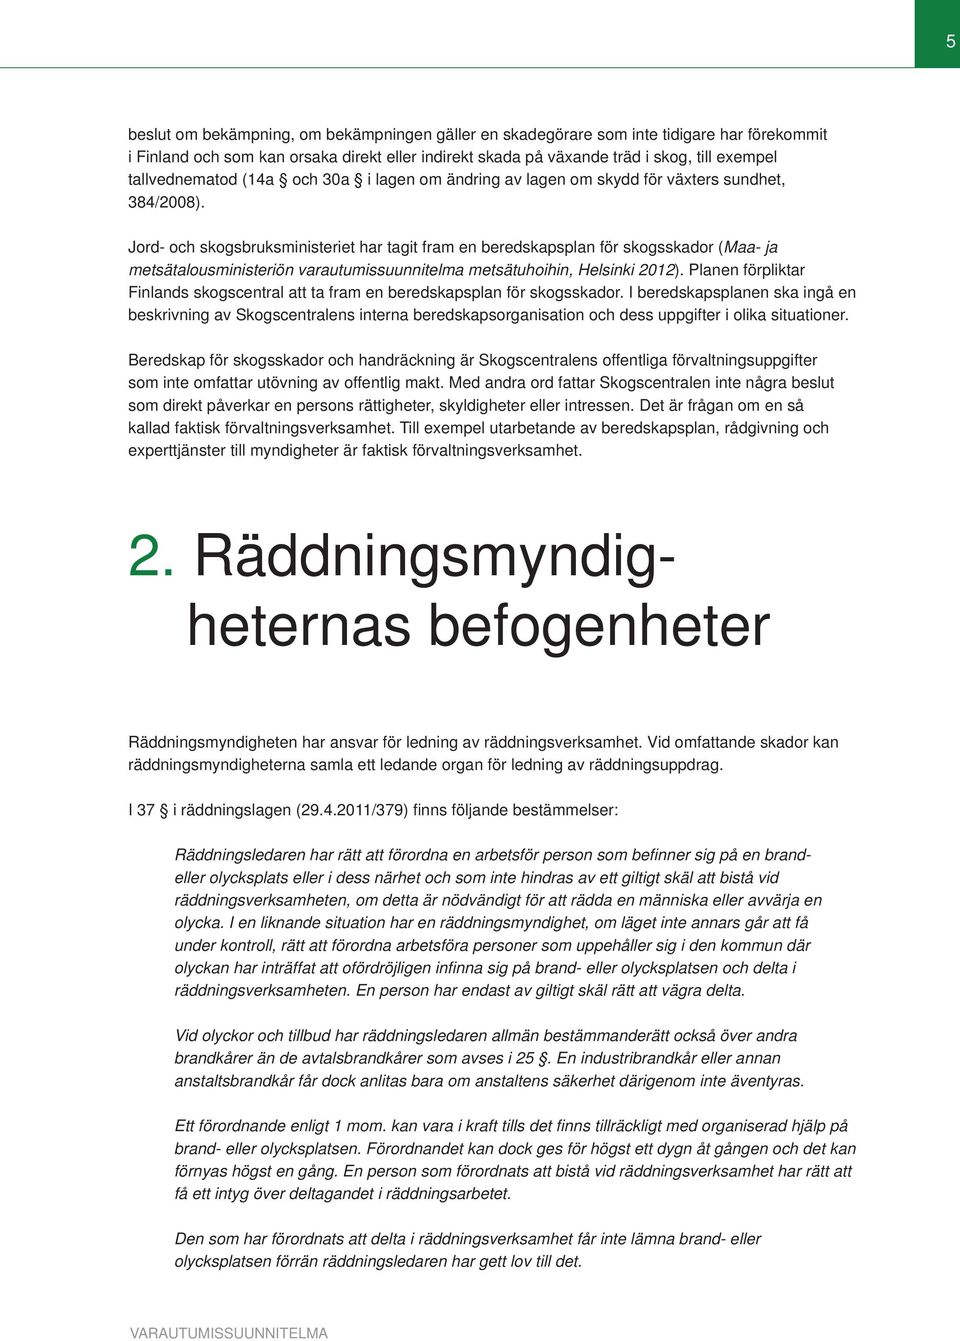 Jord- och skogsbruksministeriet har tagit fram en beredskapsplan för skogsskador (Maa- ja metsätalousministeriön varautumissuunnitelma metsätuhoihin, Helsinki 2012).